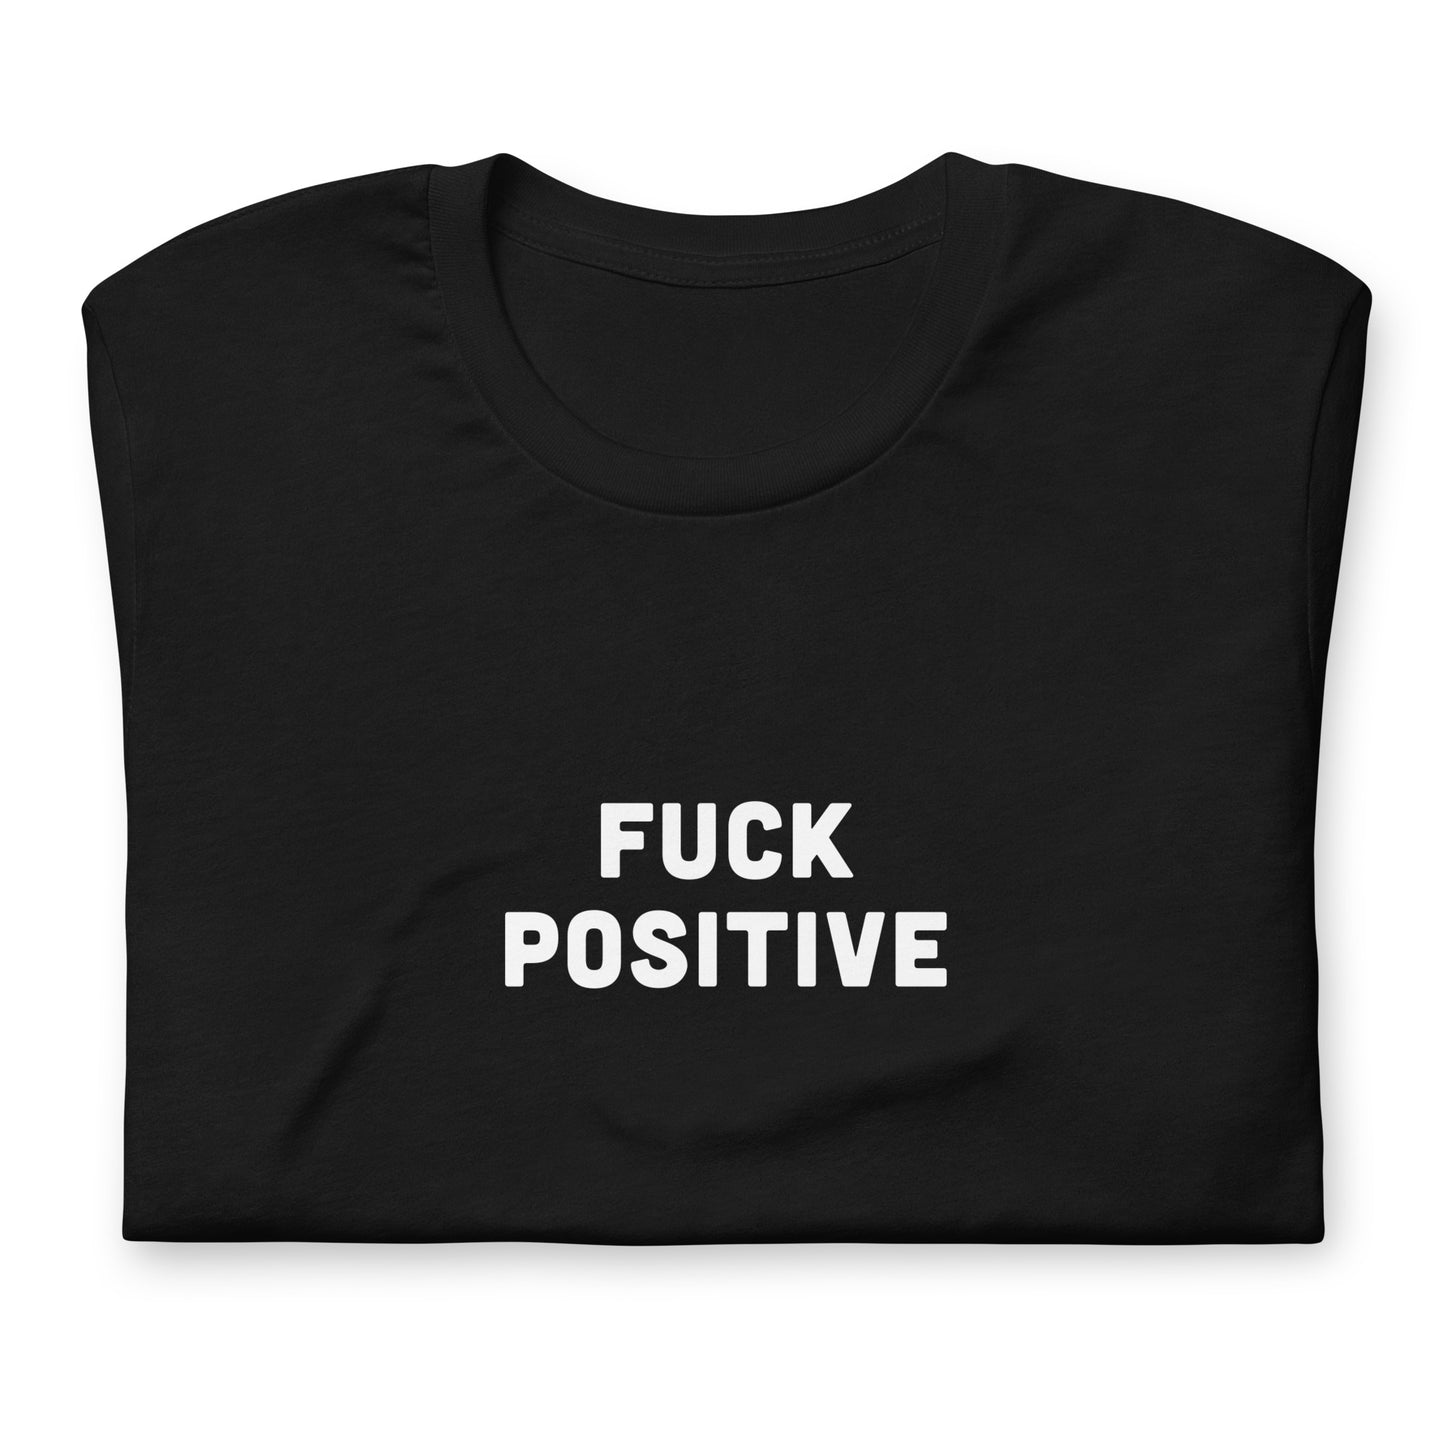 Fuck Positive T-Shirt Size M Color Black